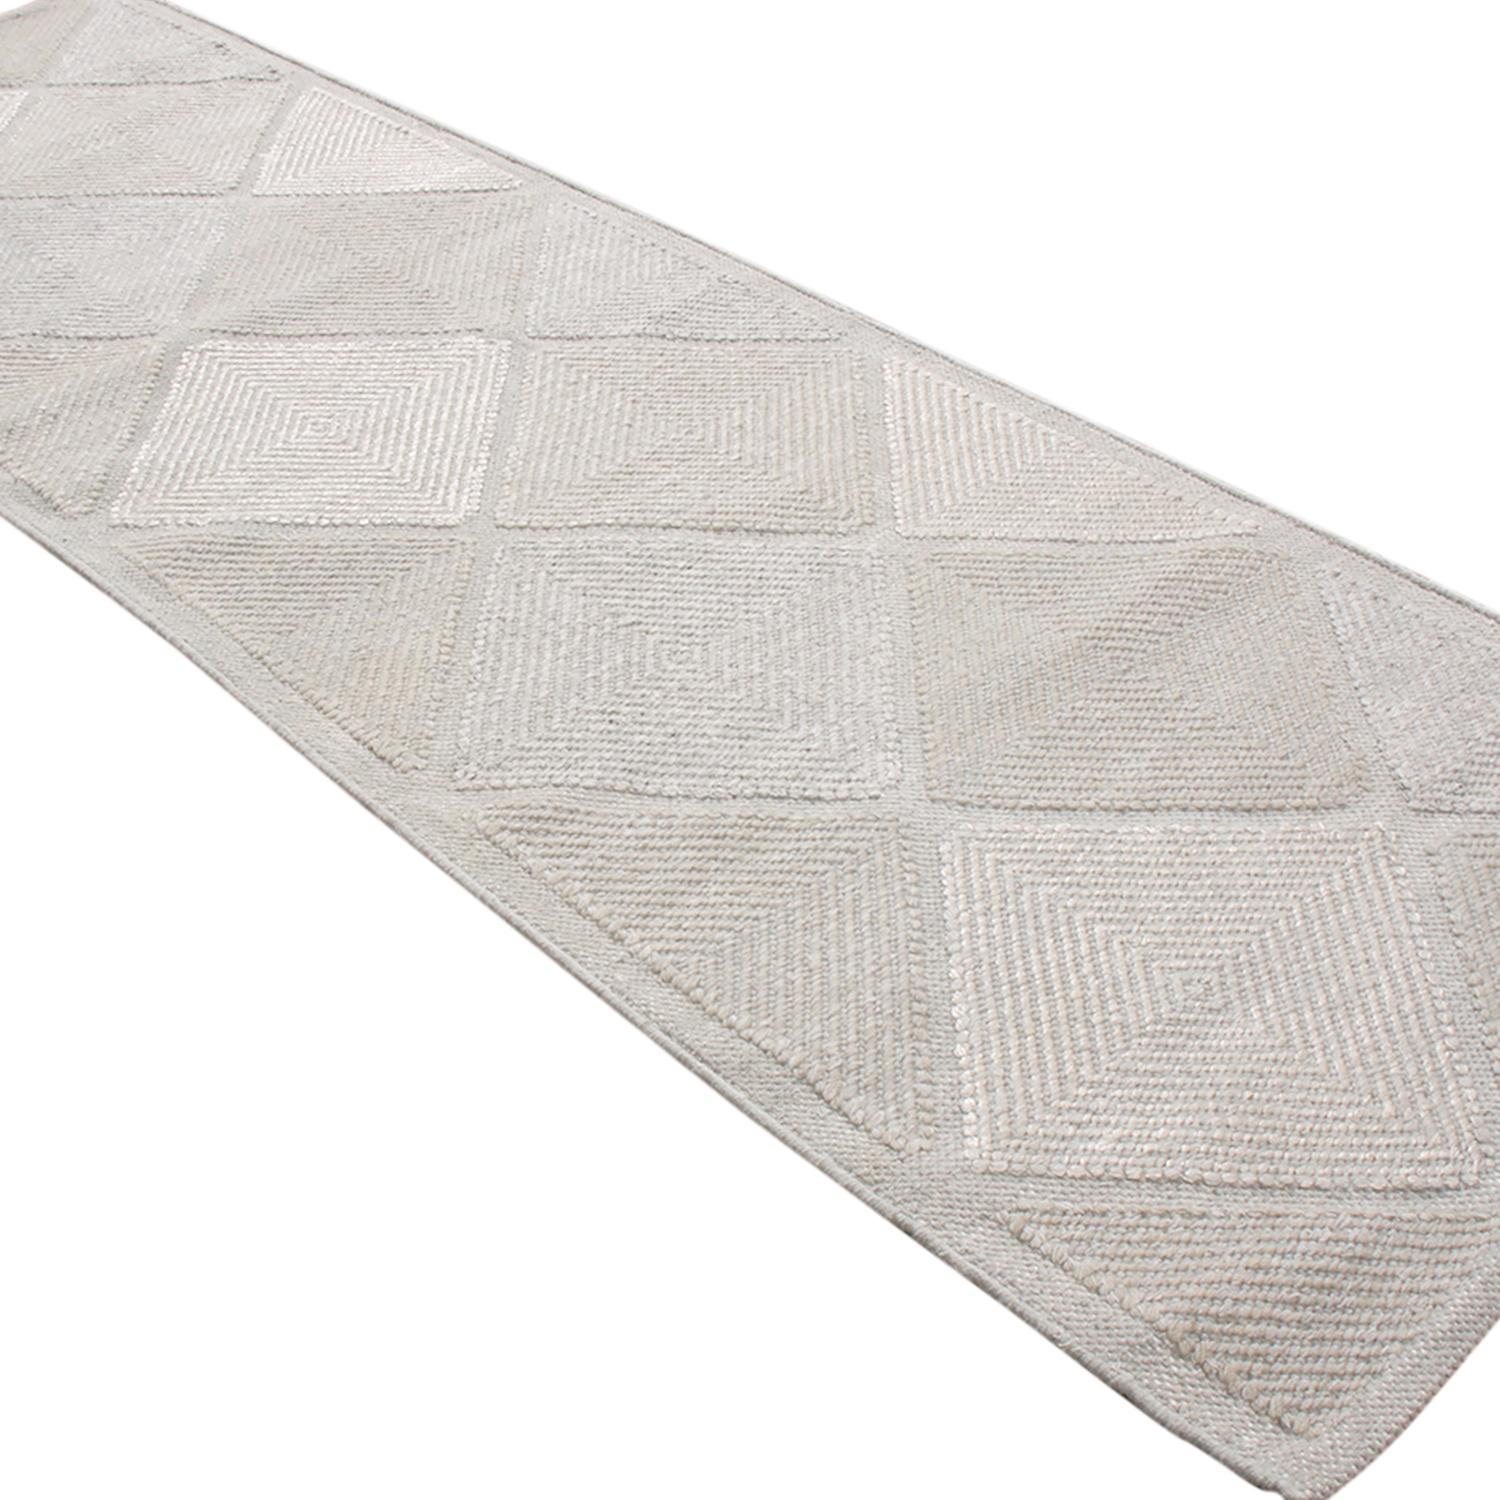 Dieser aus Indien stammende Teppich aus natürlichem Polyester stammt aus der skandinavischen Outdoor-Kollektion von Rug & Kilim, die unter anderem diese gewellte Interpretation berühmter marokkanischer Rautenmuster in mehrfarbigen cremeweißen und